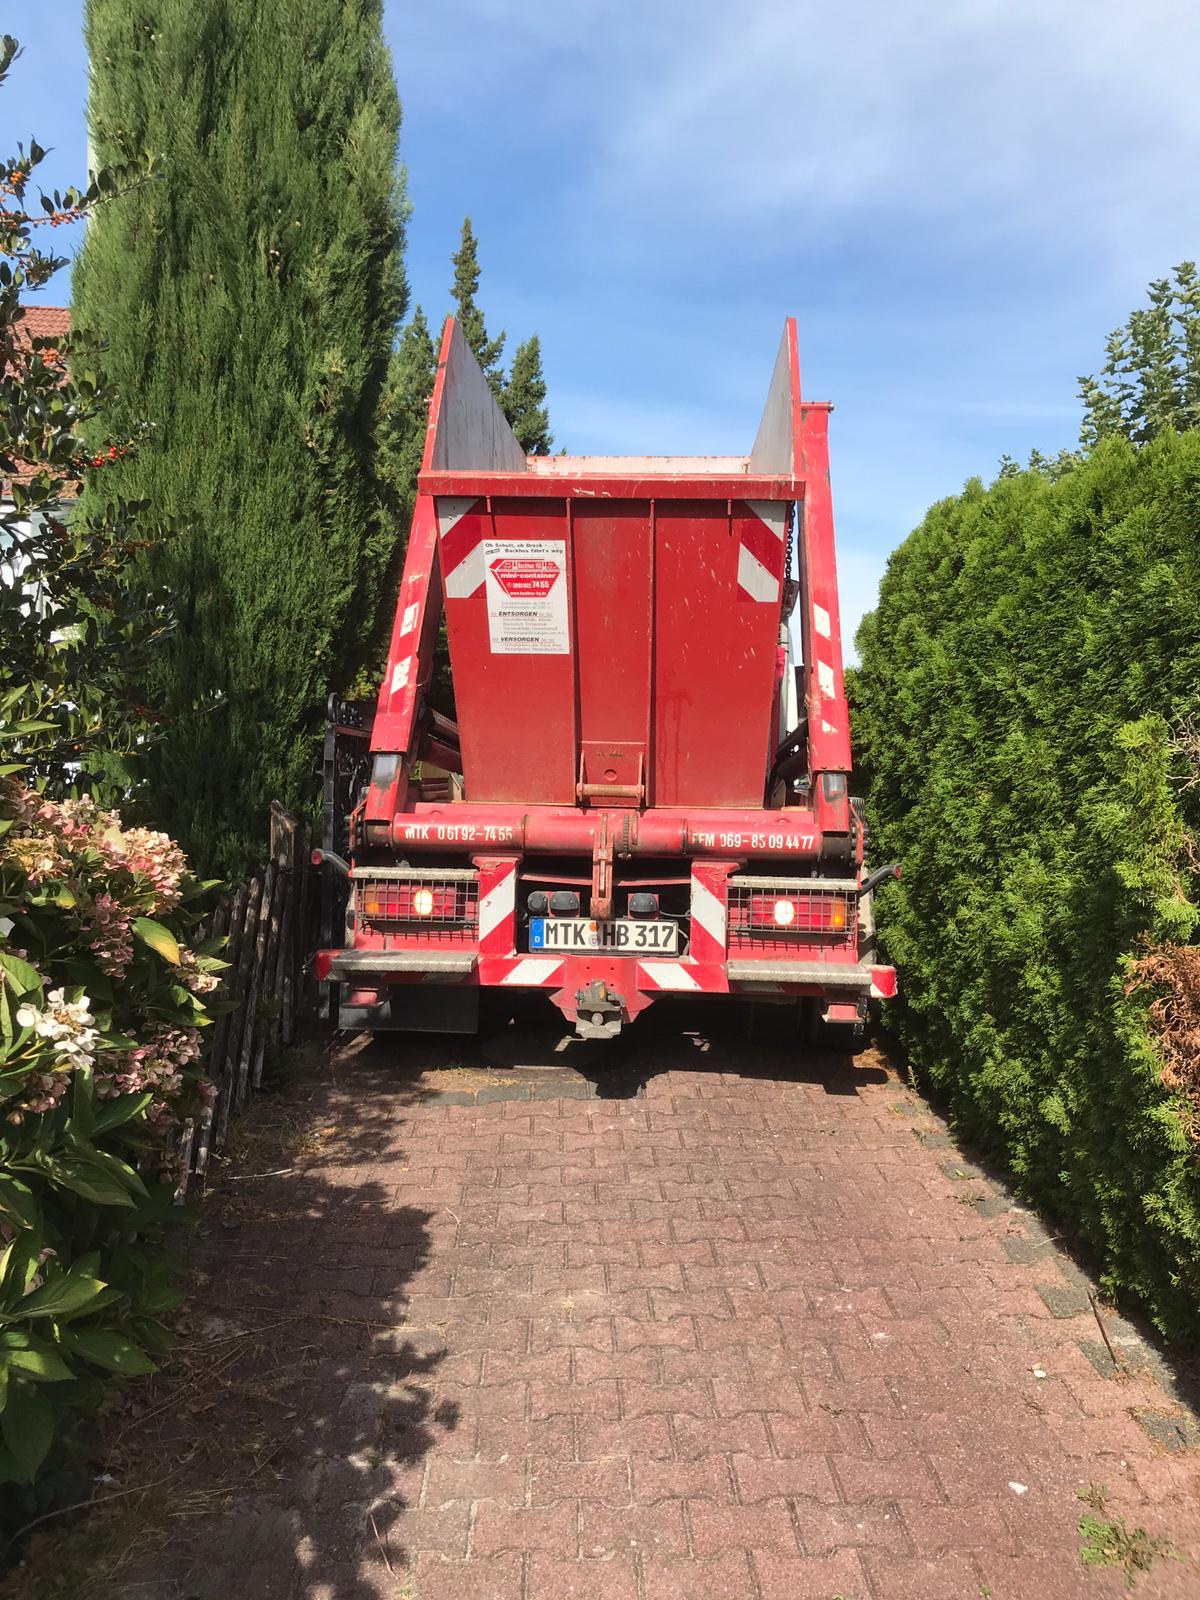 LKW, beladen mit rotem Container der Firma Backhus, fährt durch eine enge Gasse.